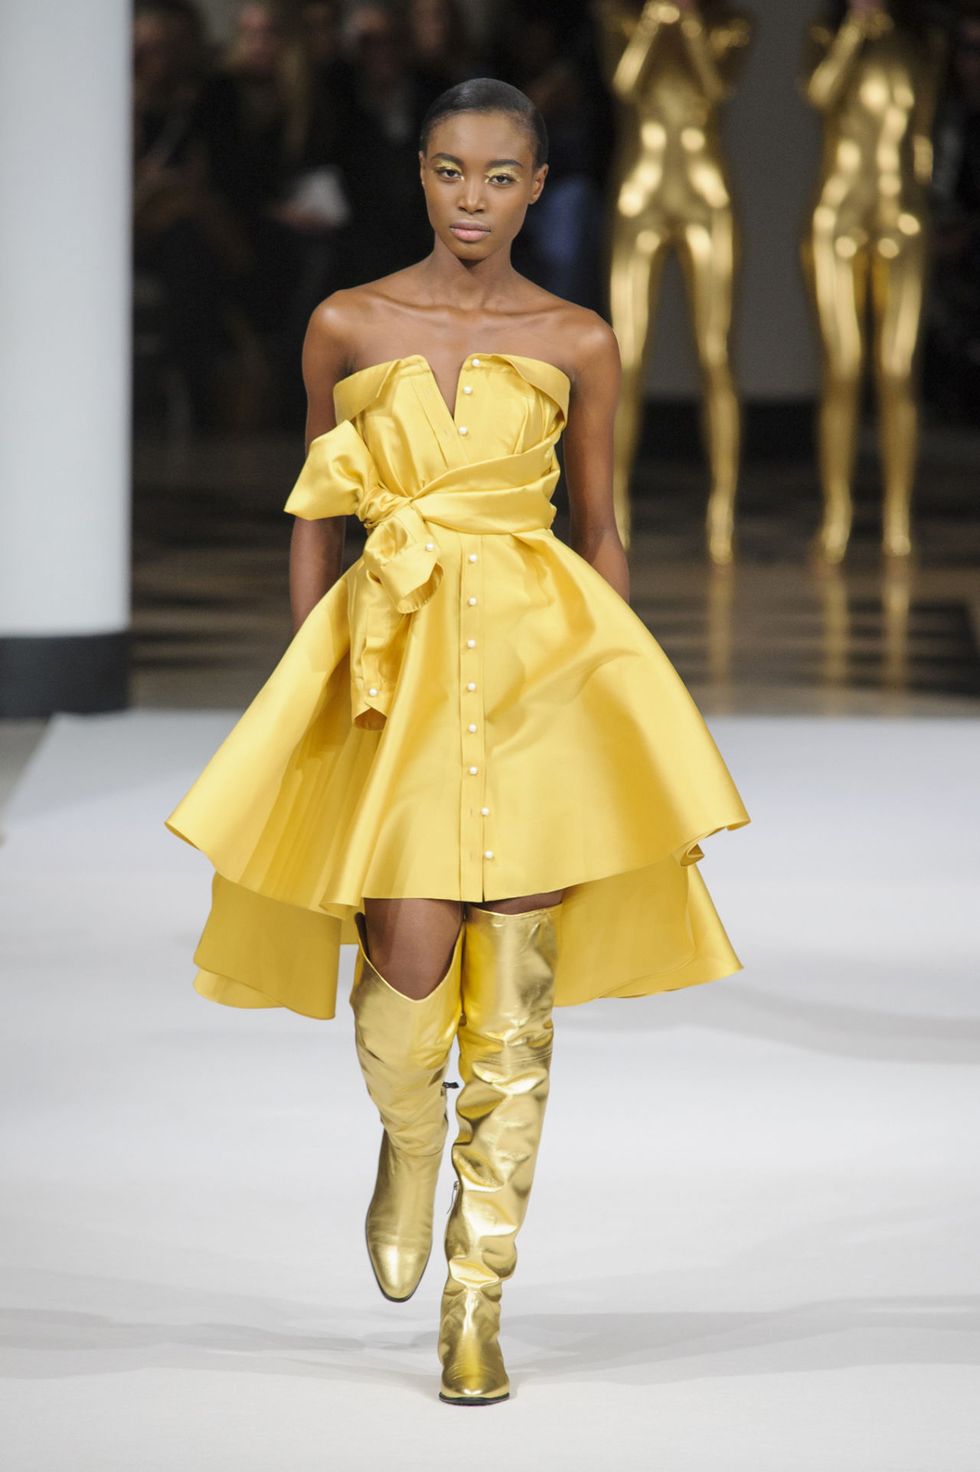 Dalle passerelle della Parigi Fashion Week risplendono solo vestiti eleganti oro, il vero lusso per le tue serate glam: abiti scintillanti, lucenti e riflettenti realizzati in tessuti dorati a 24 carati